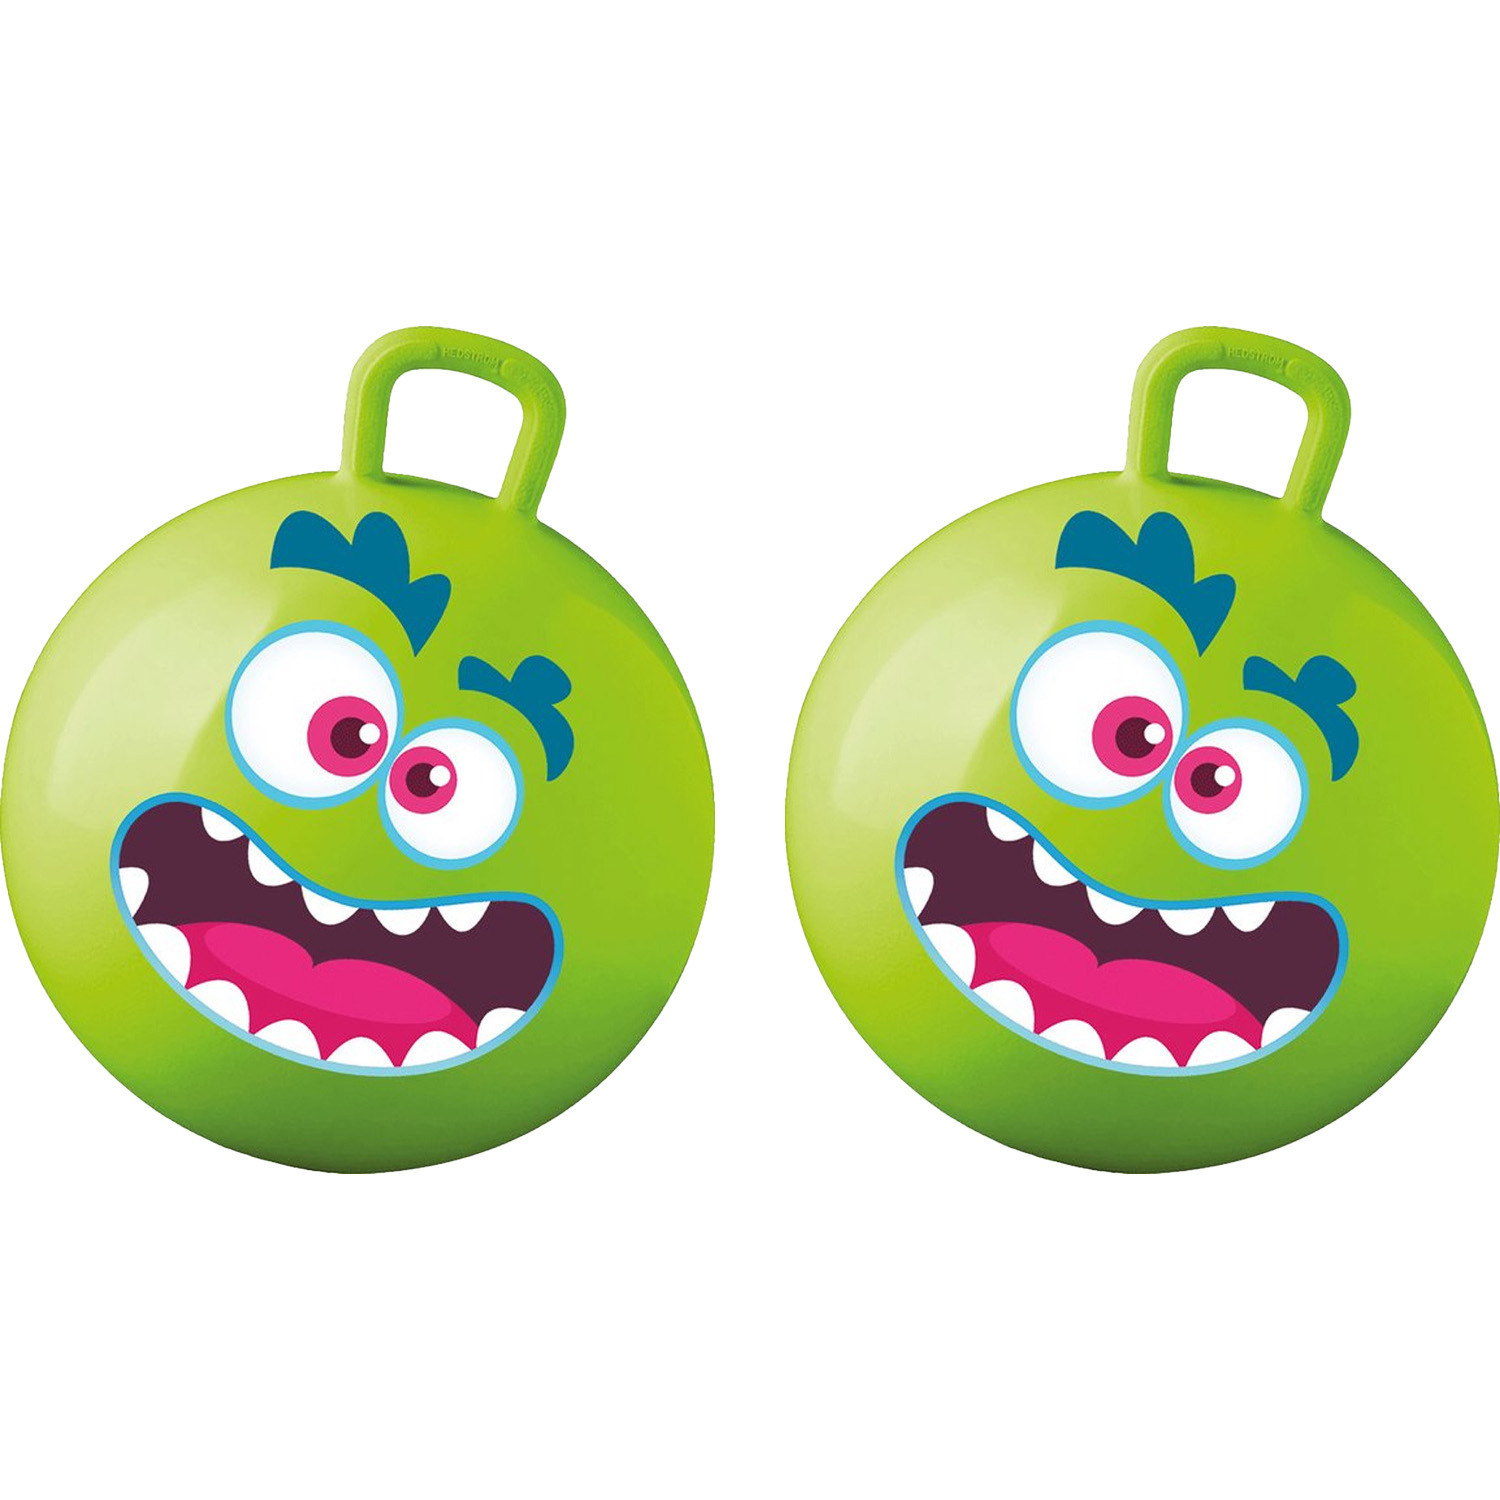 Skippybal met smiley 2x groen 50 cm buitenspeelgoed voor kinderen